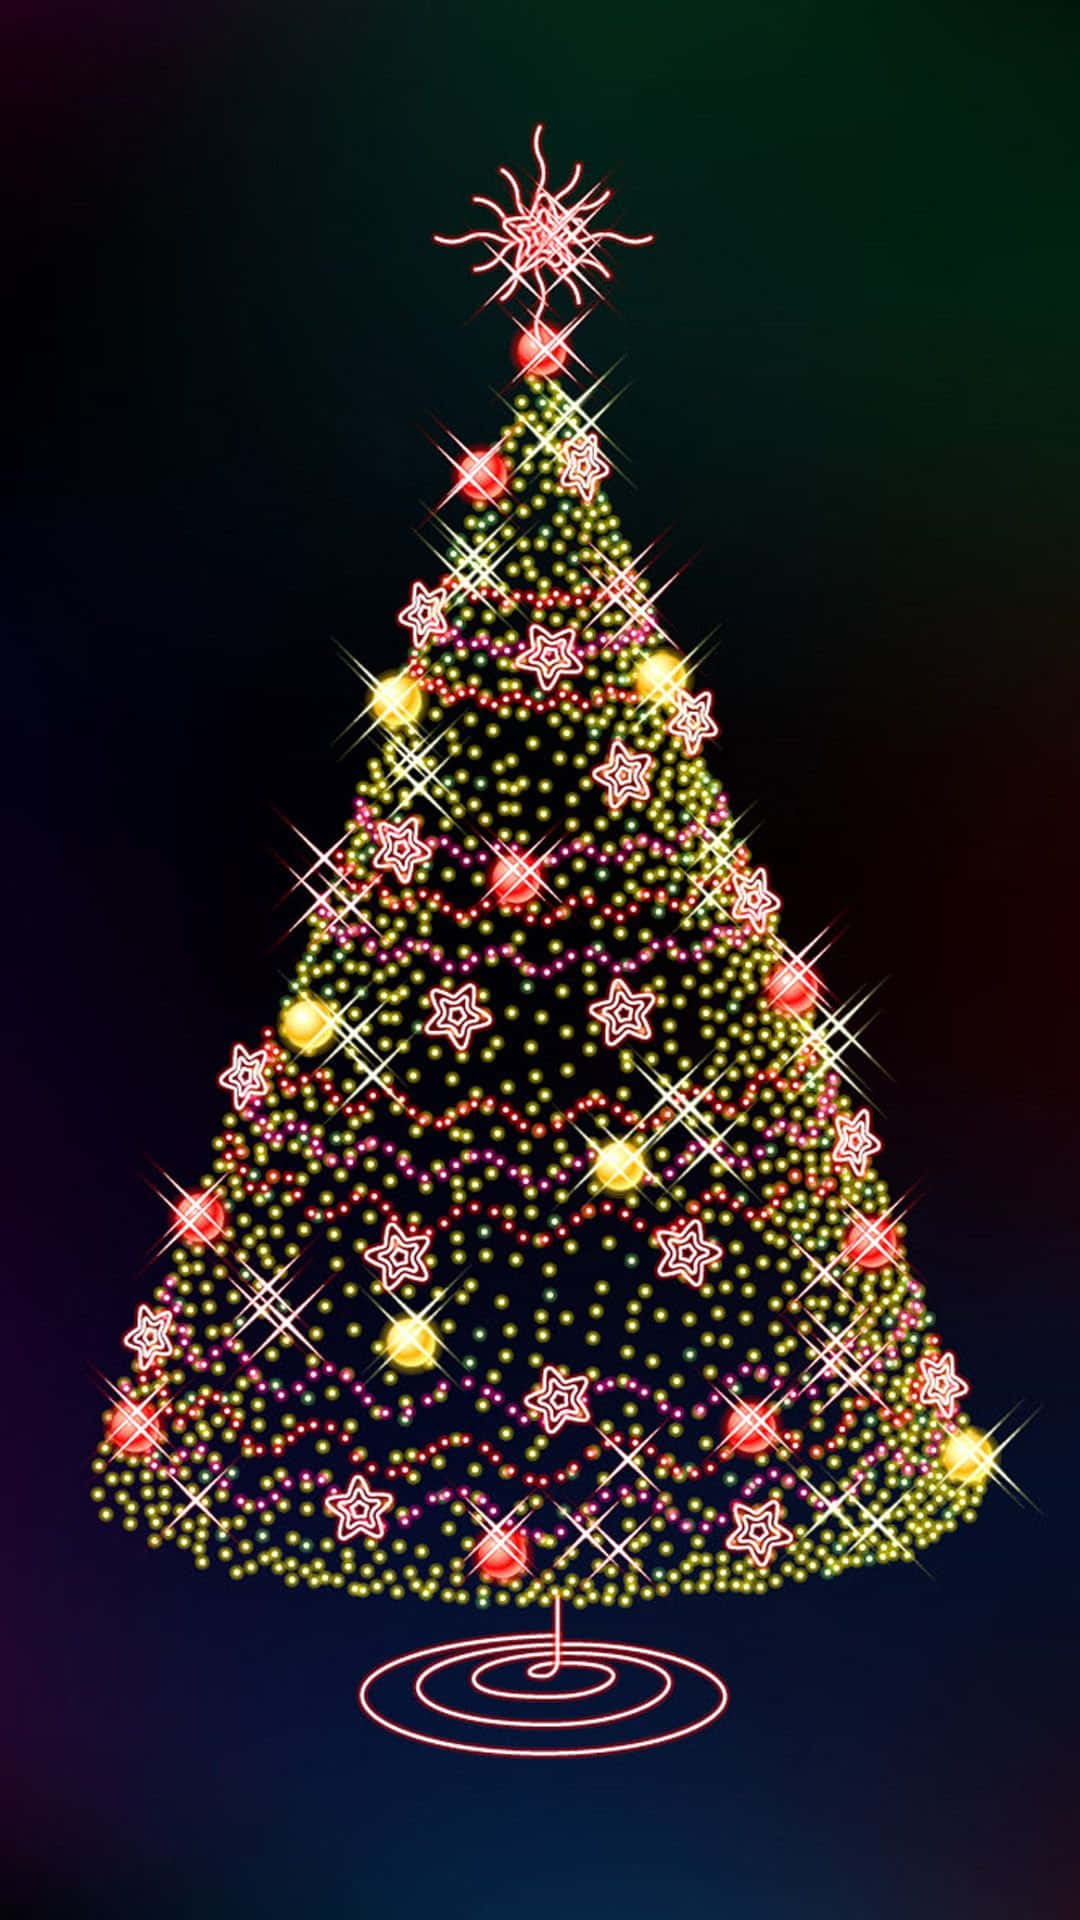 Bunterweihnachtsbaum Feiertag Iphone Wallpaper